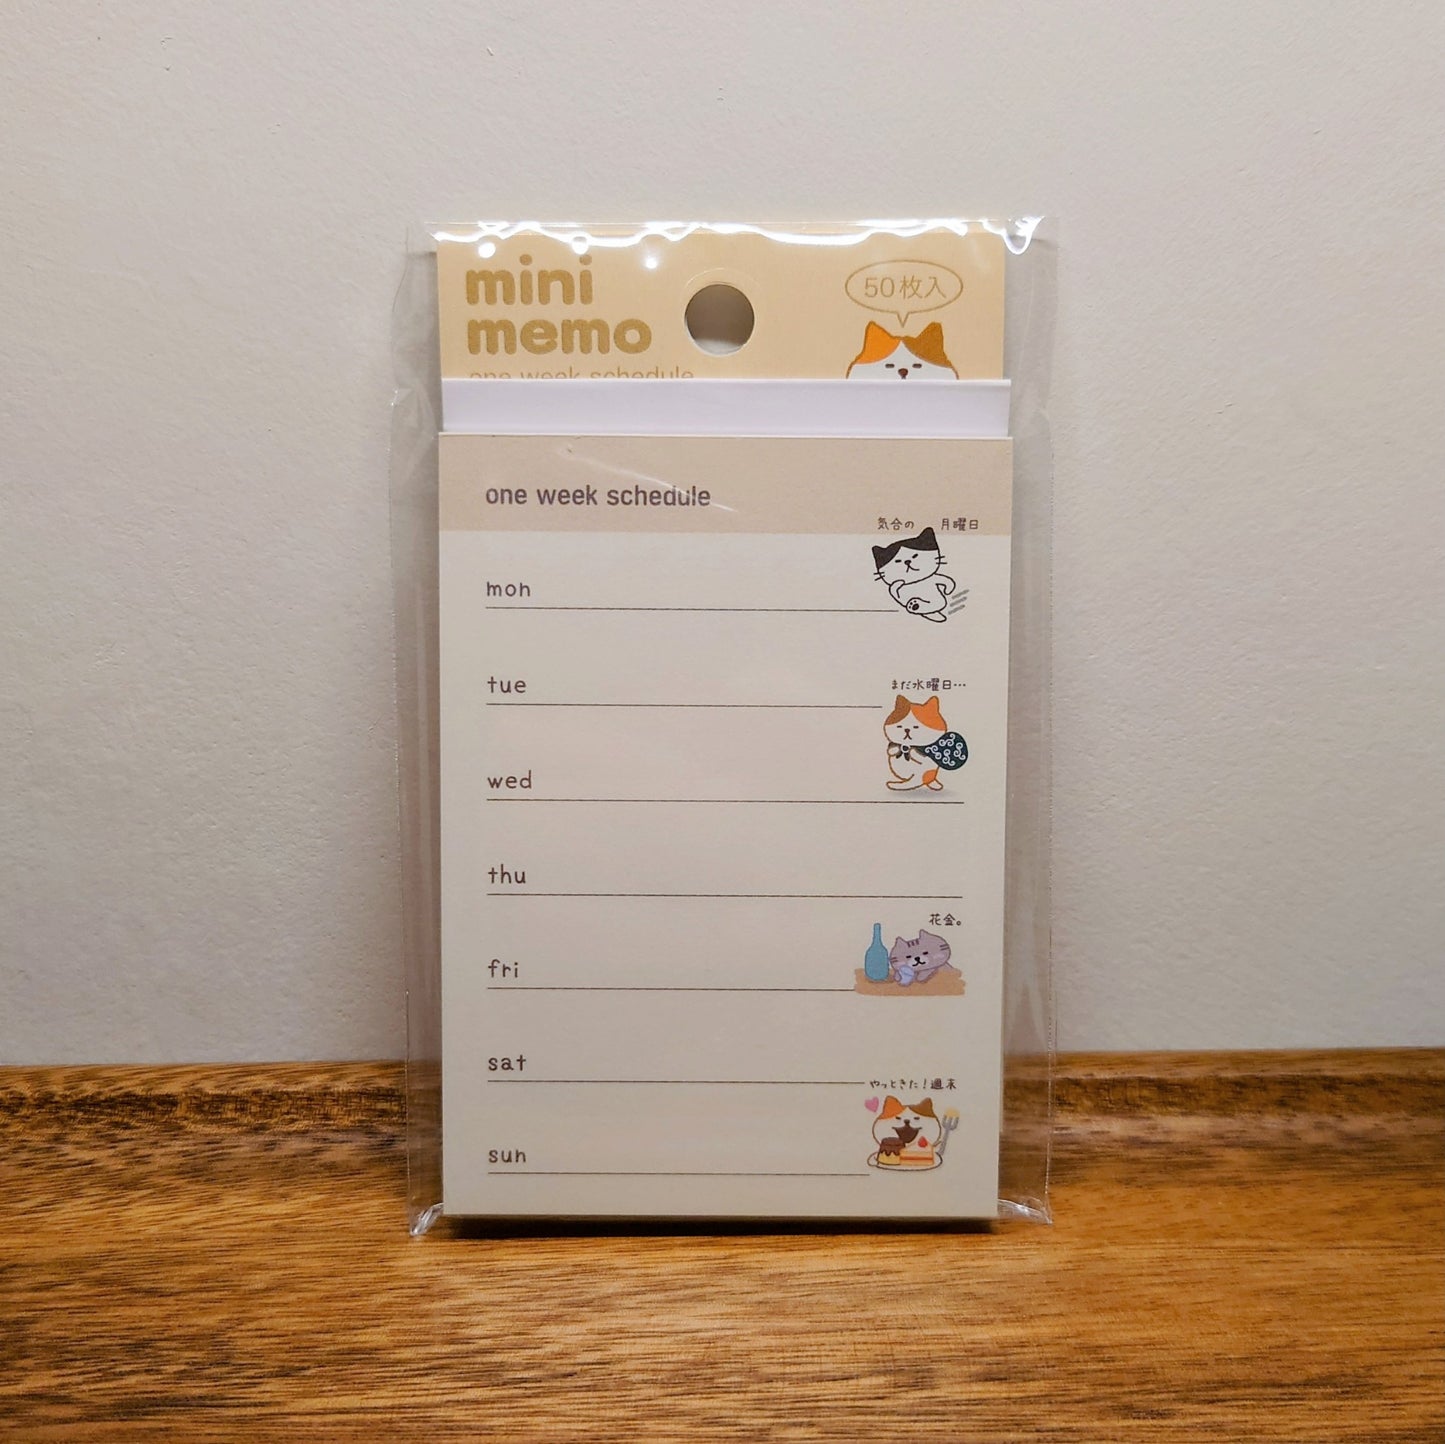 Pinebook mini memo 貓